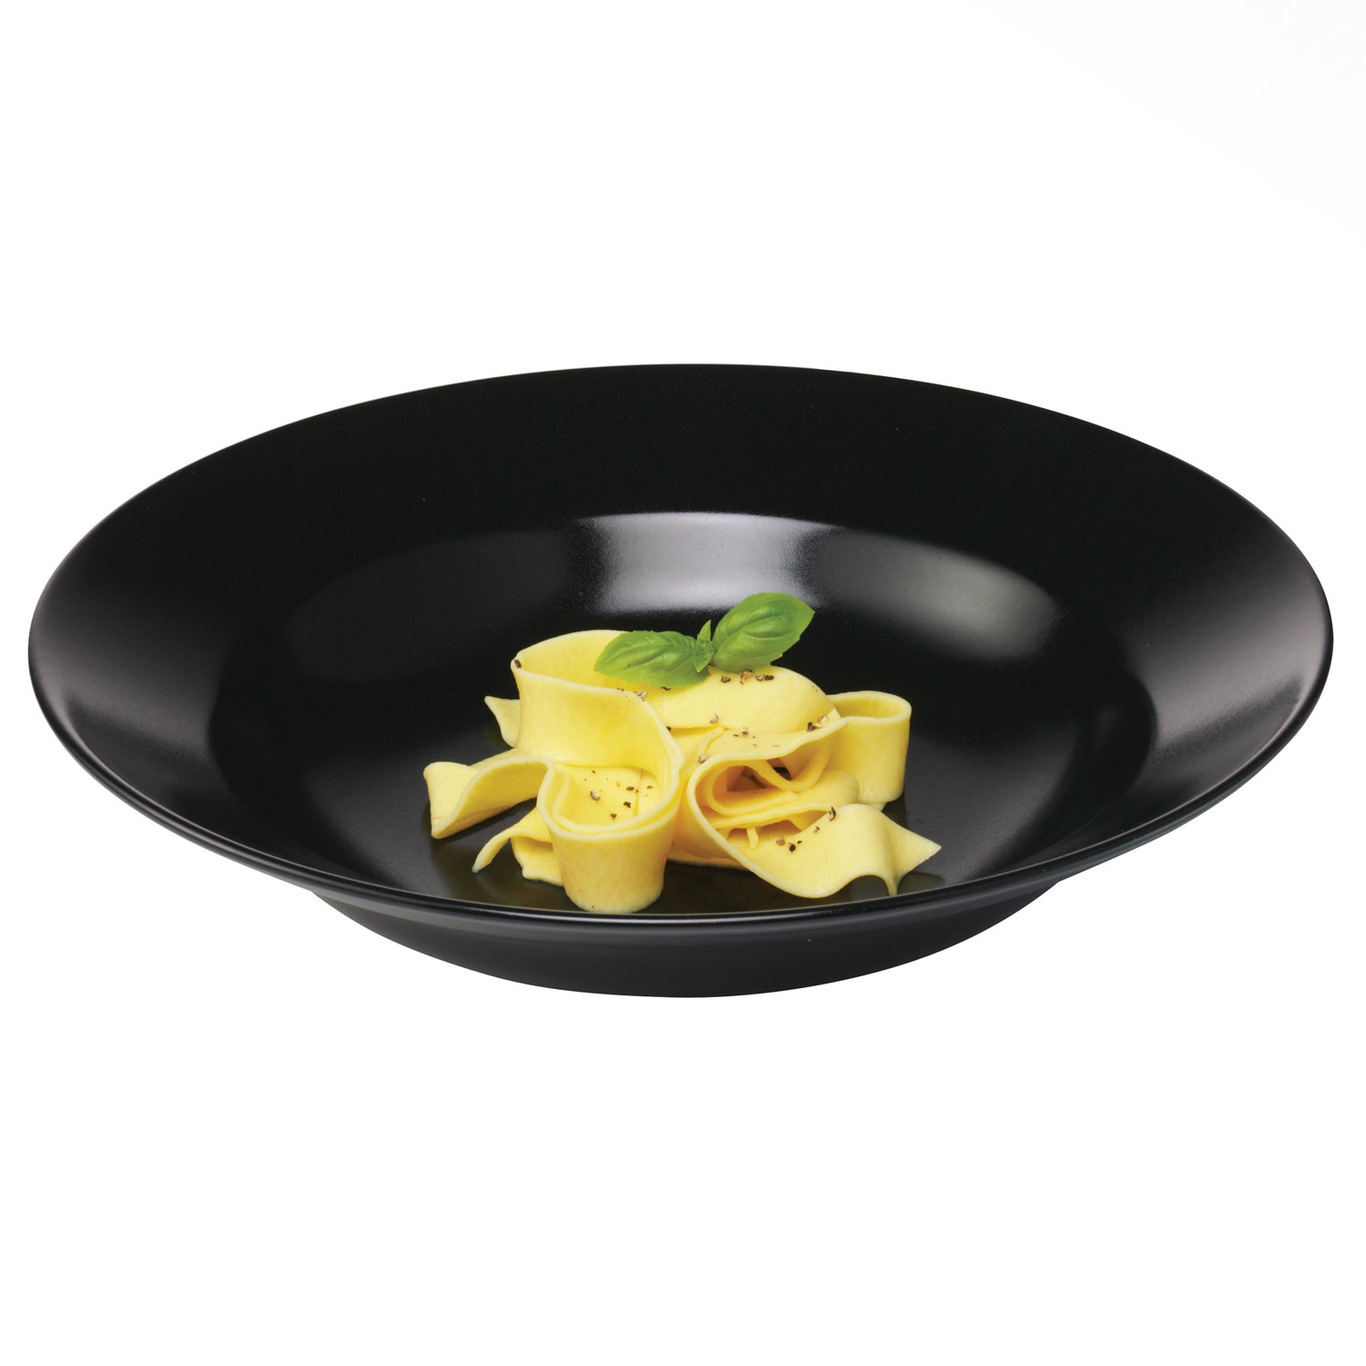 Quadro Pasta Plate 30 cm, Black